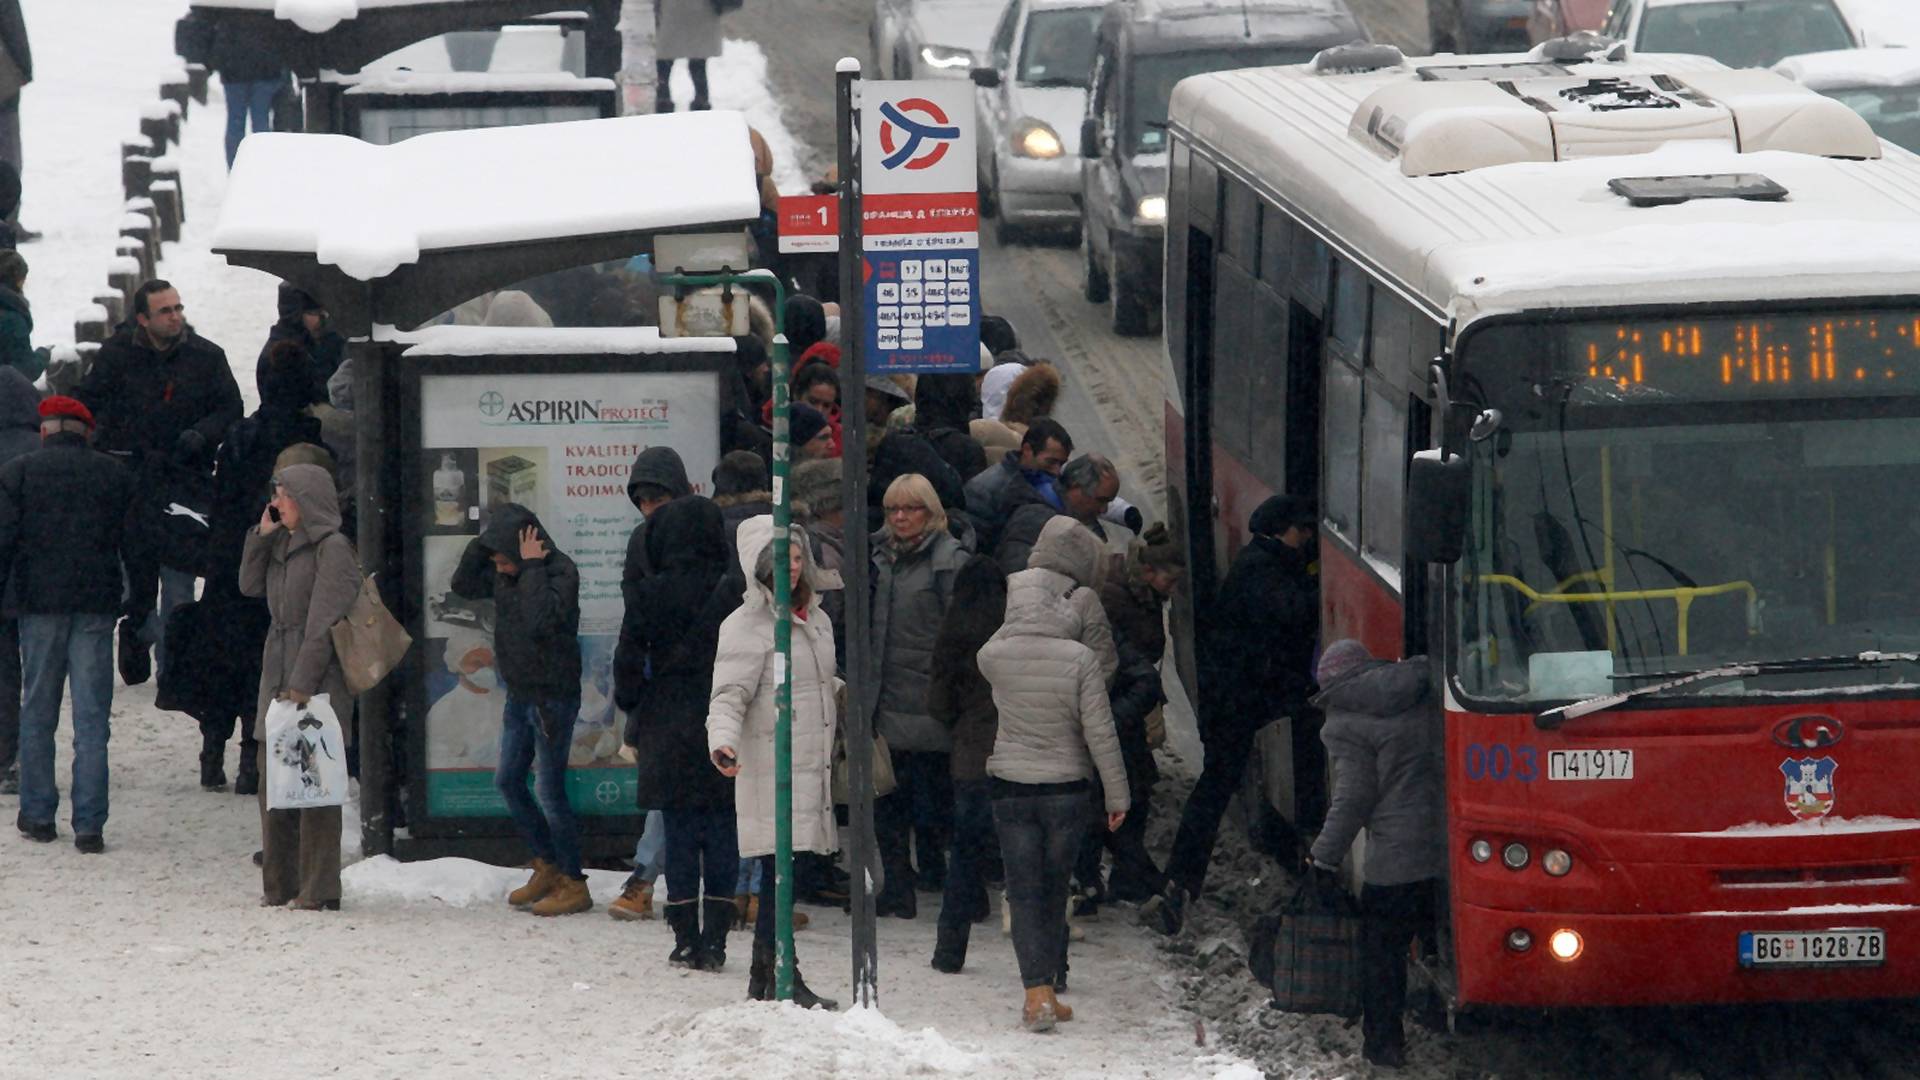 Scena iz gradskog prevoza u Beogradu ugrejaće vas bolje od ičega